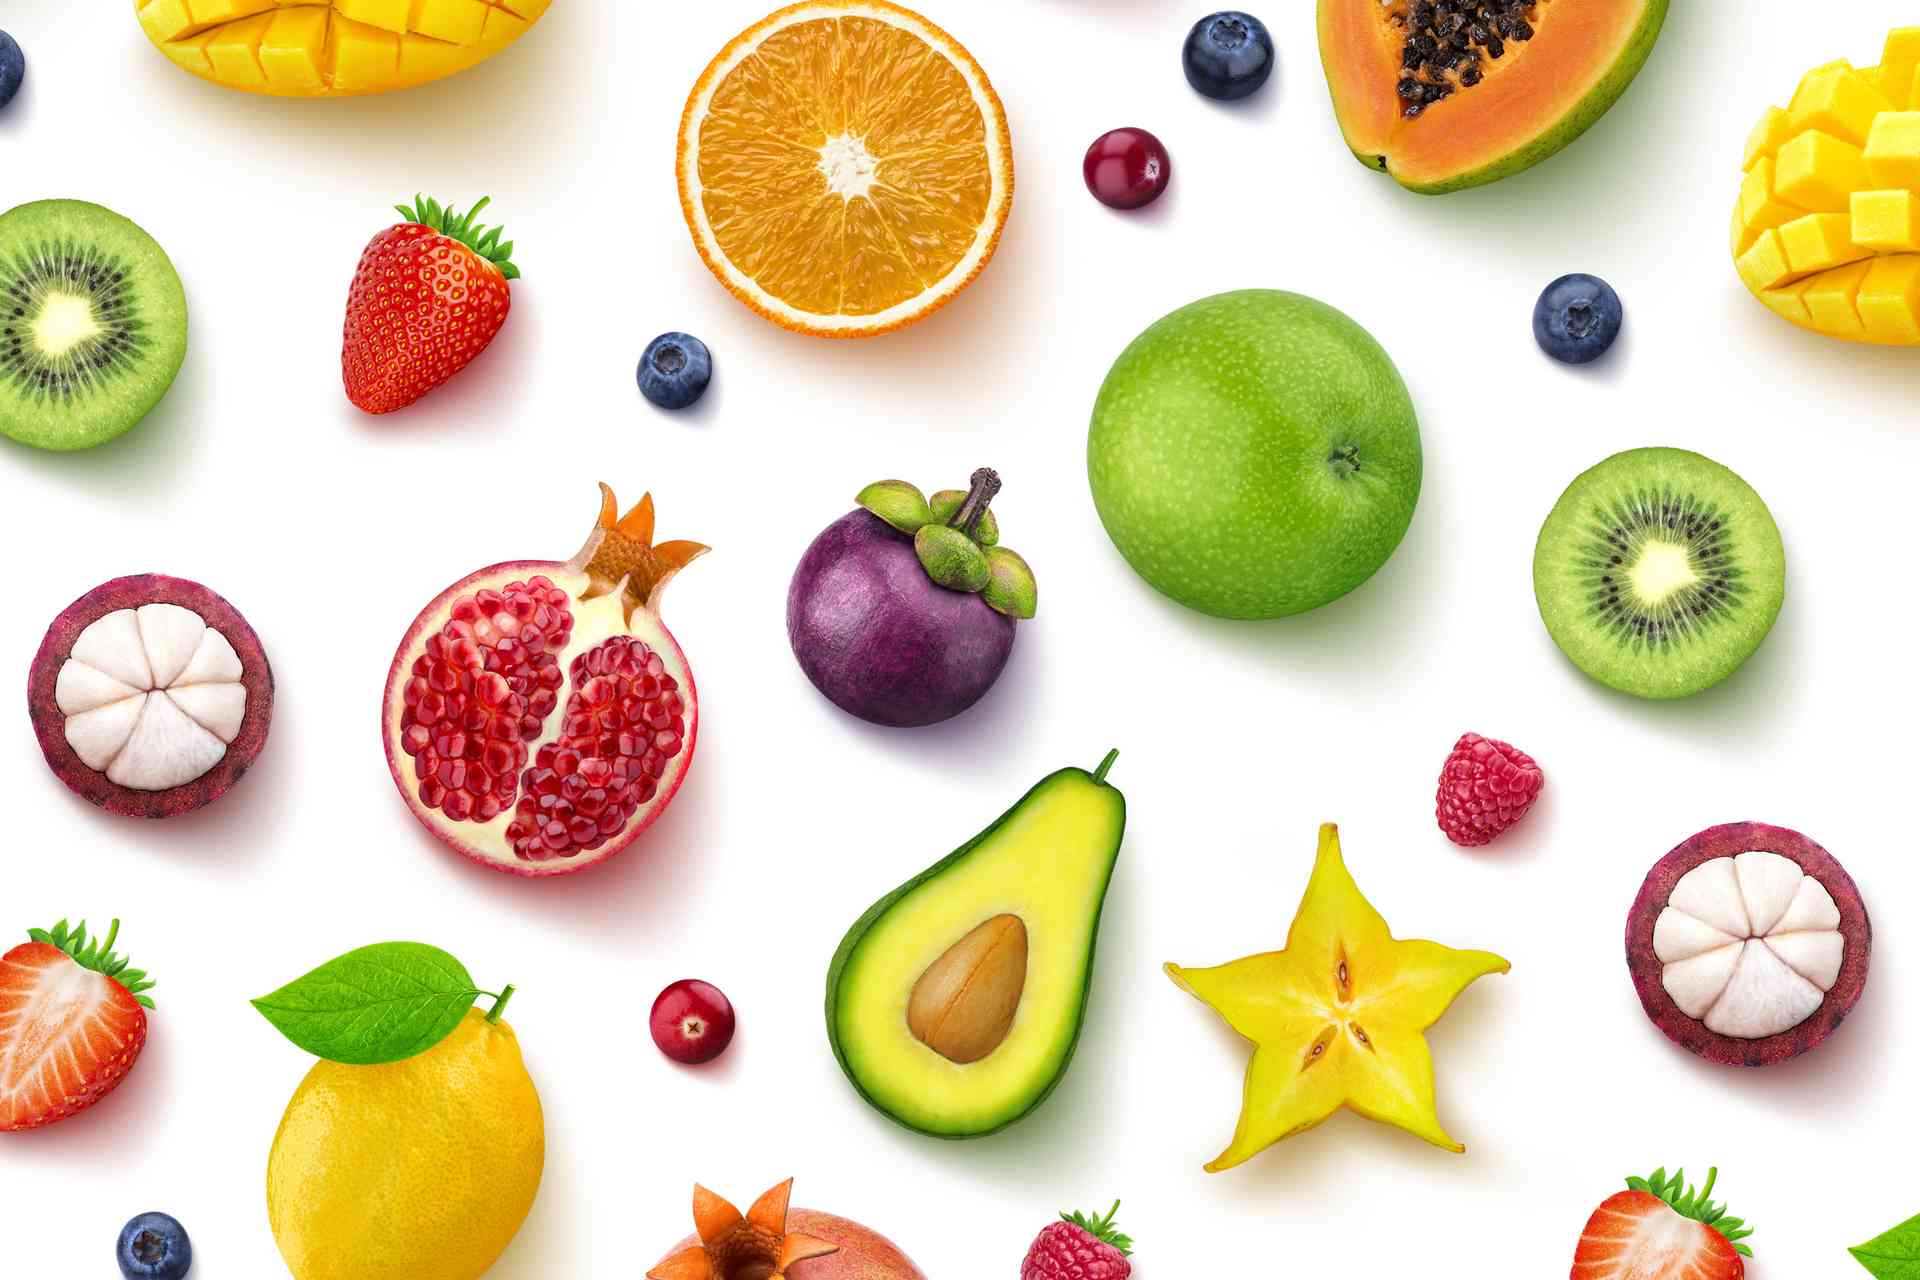 La frutta che “piace” al microbioma